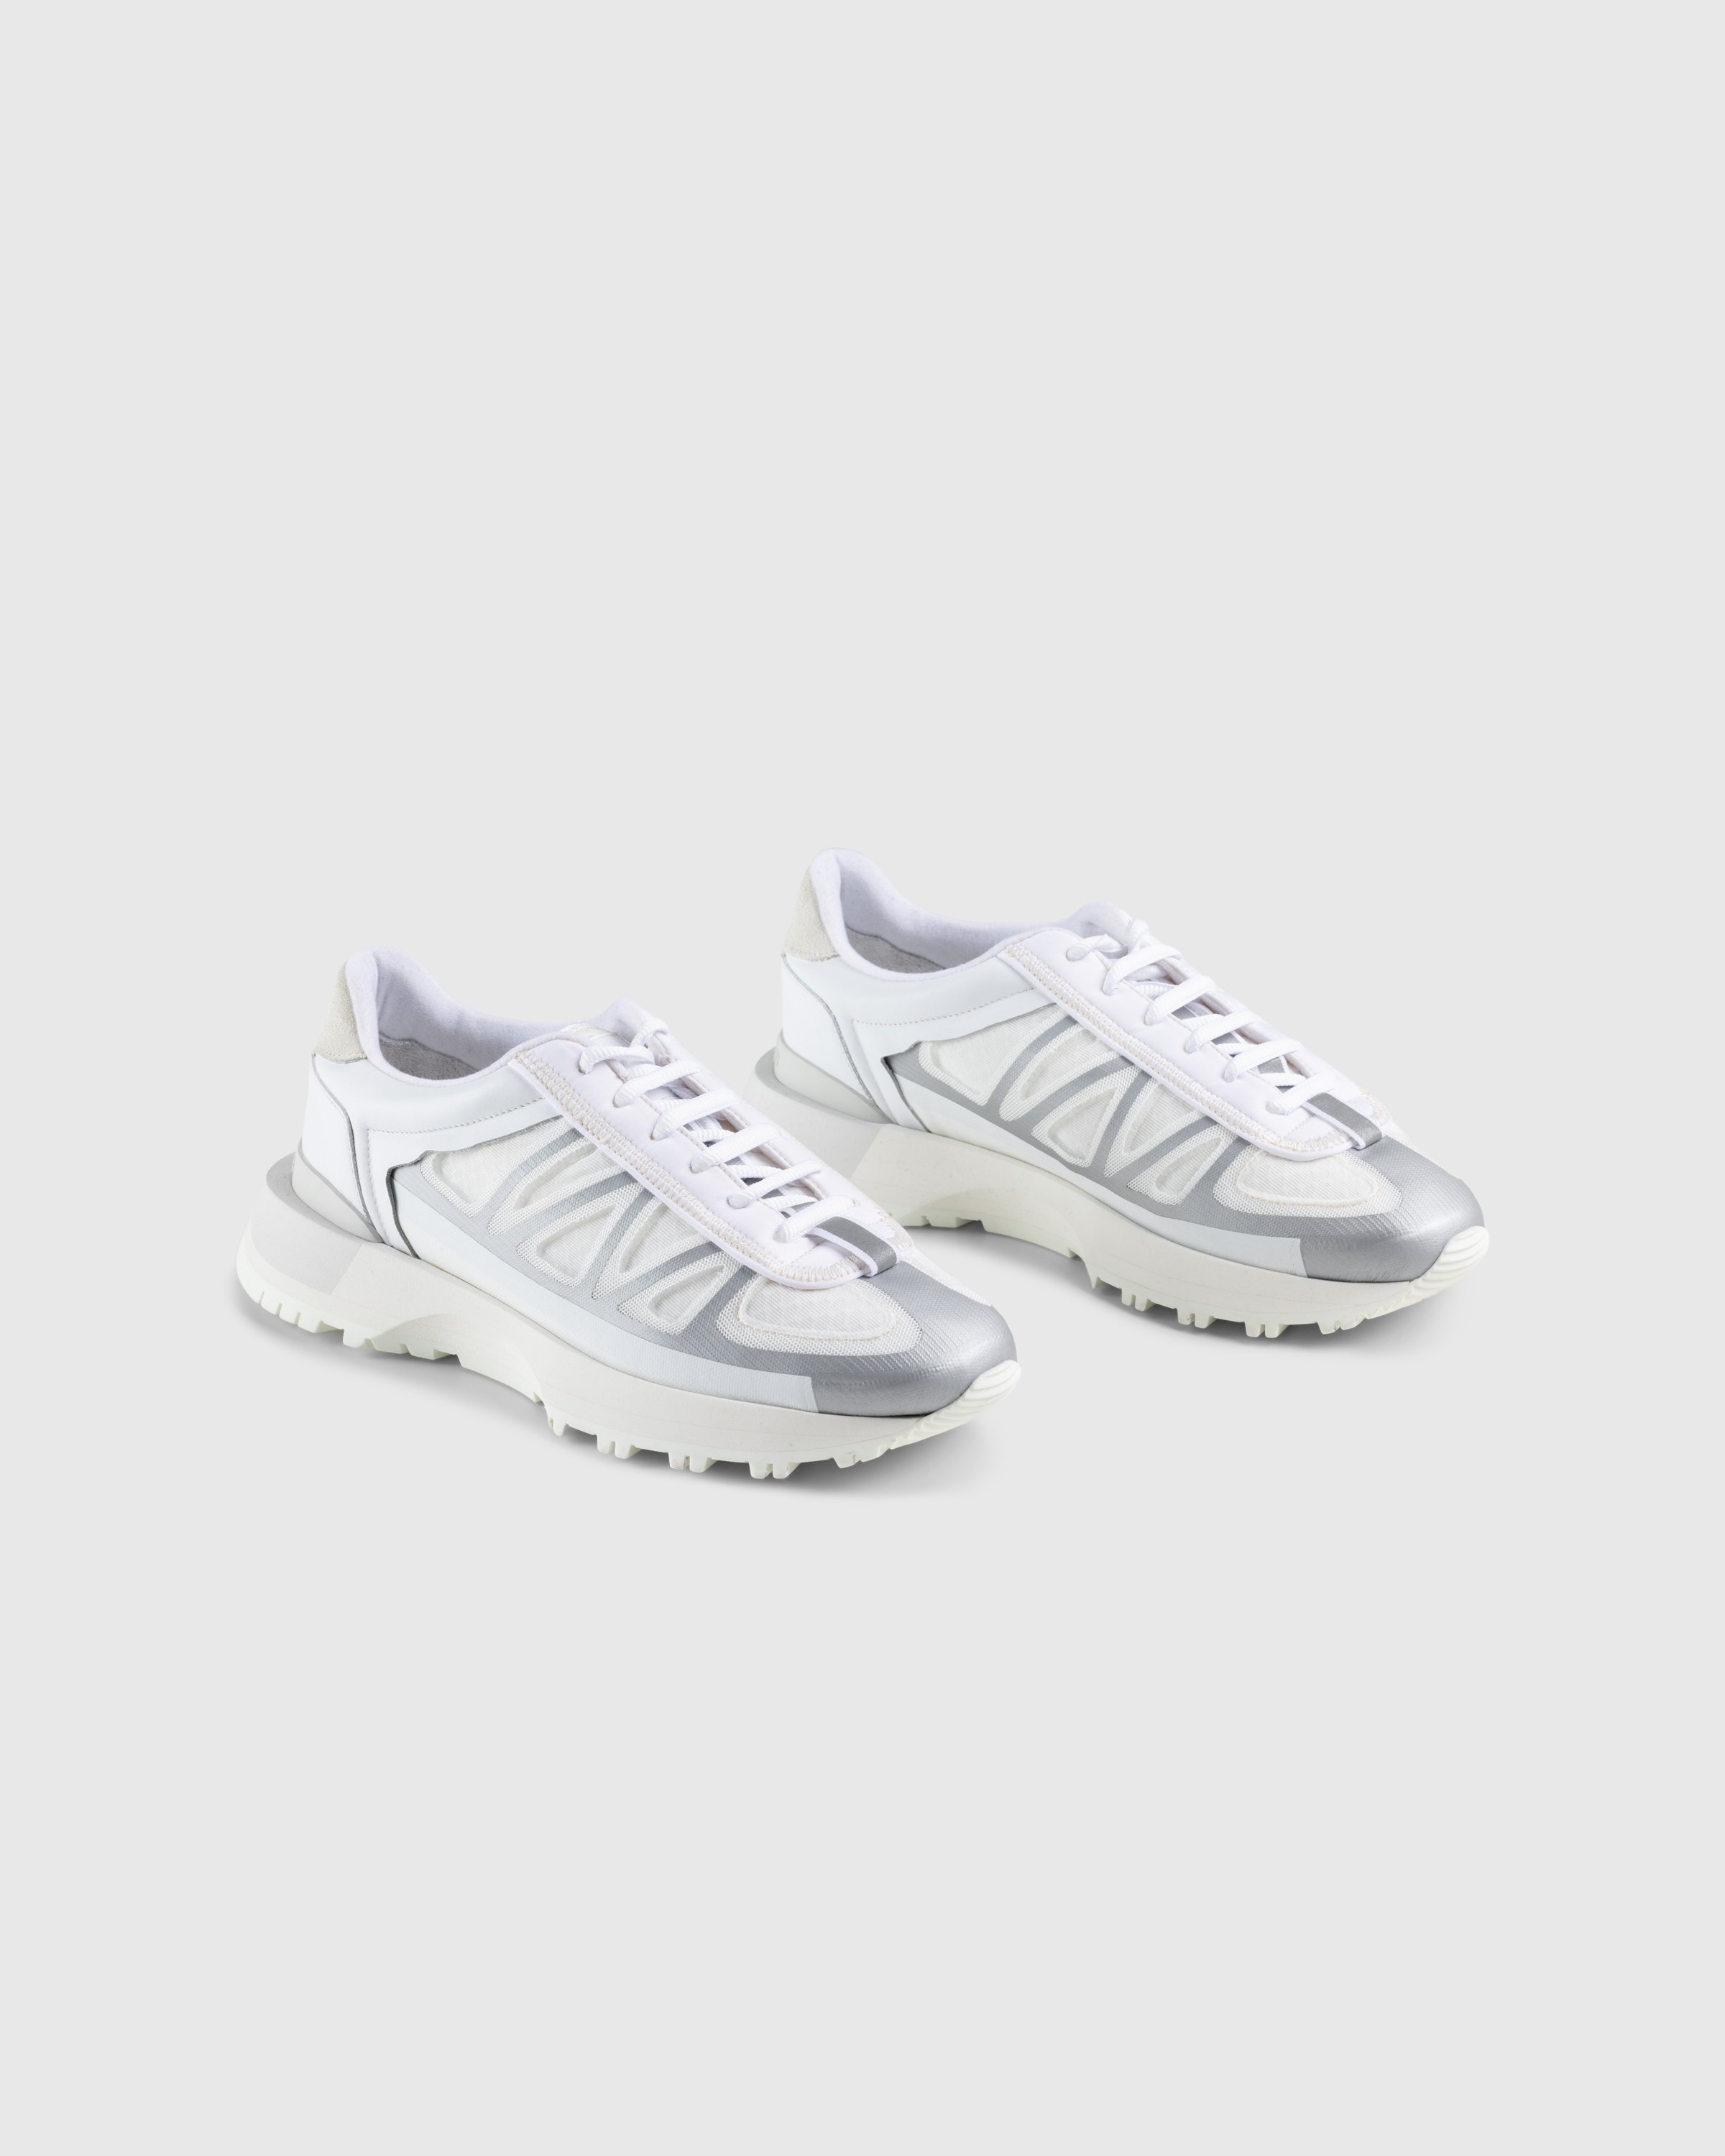 Maison Margiela – 50/50 Sneakers White - Sneakers - White - Image 3